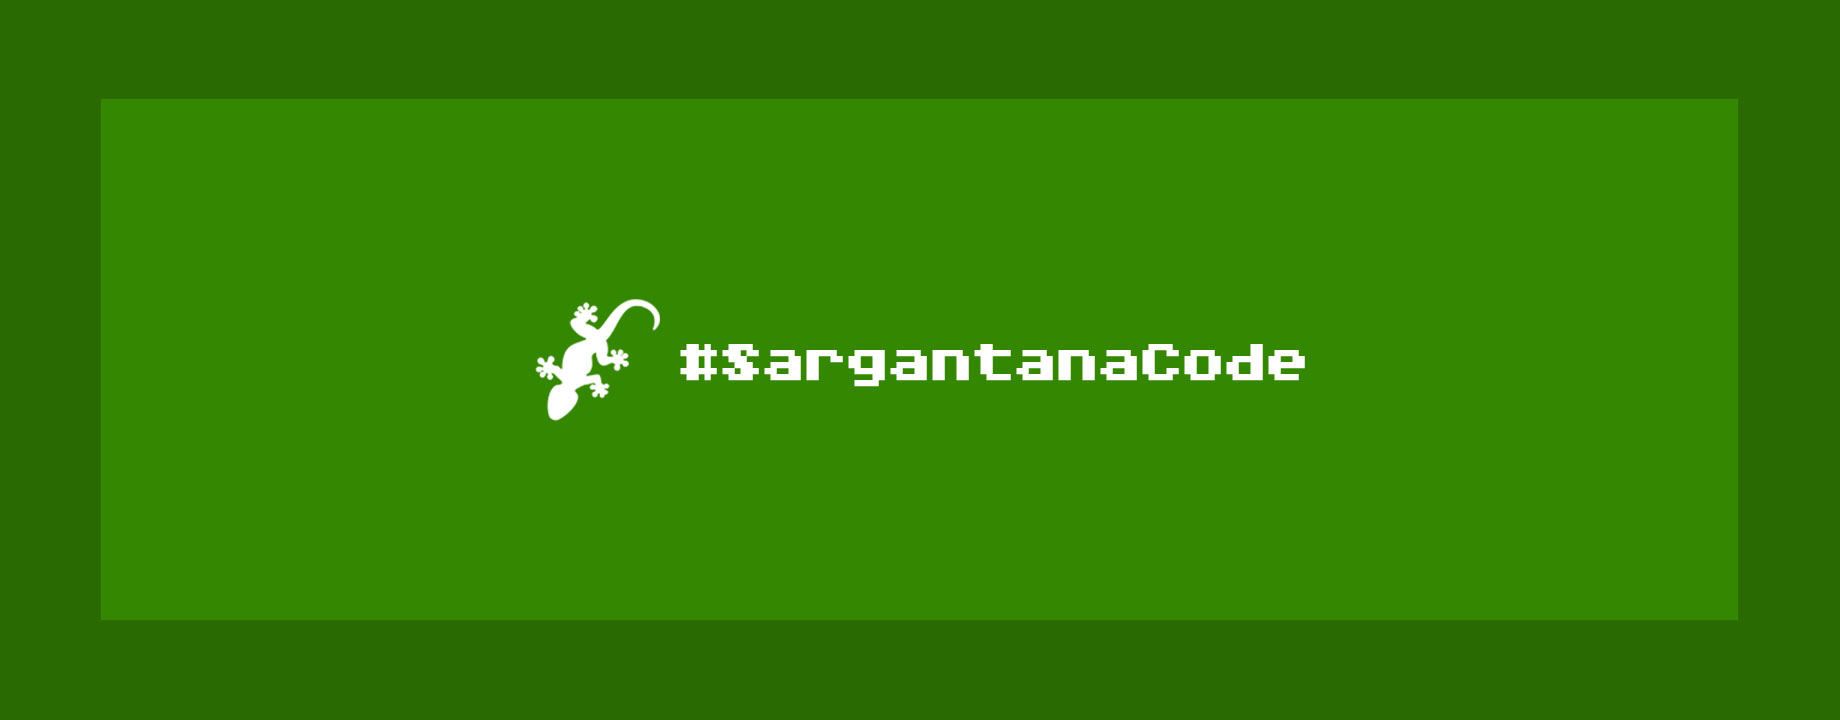 Inauguración del proyecto SargantanaCode